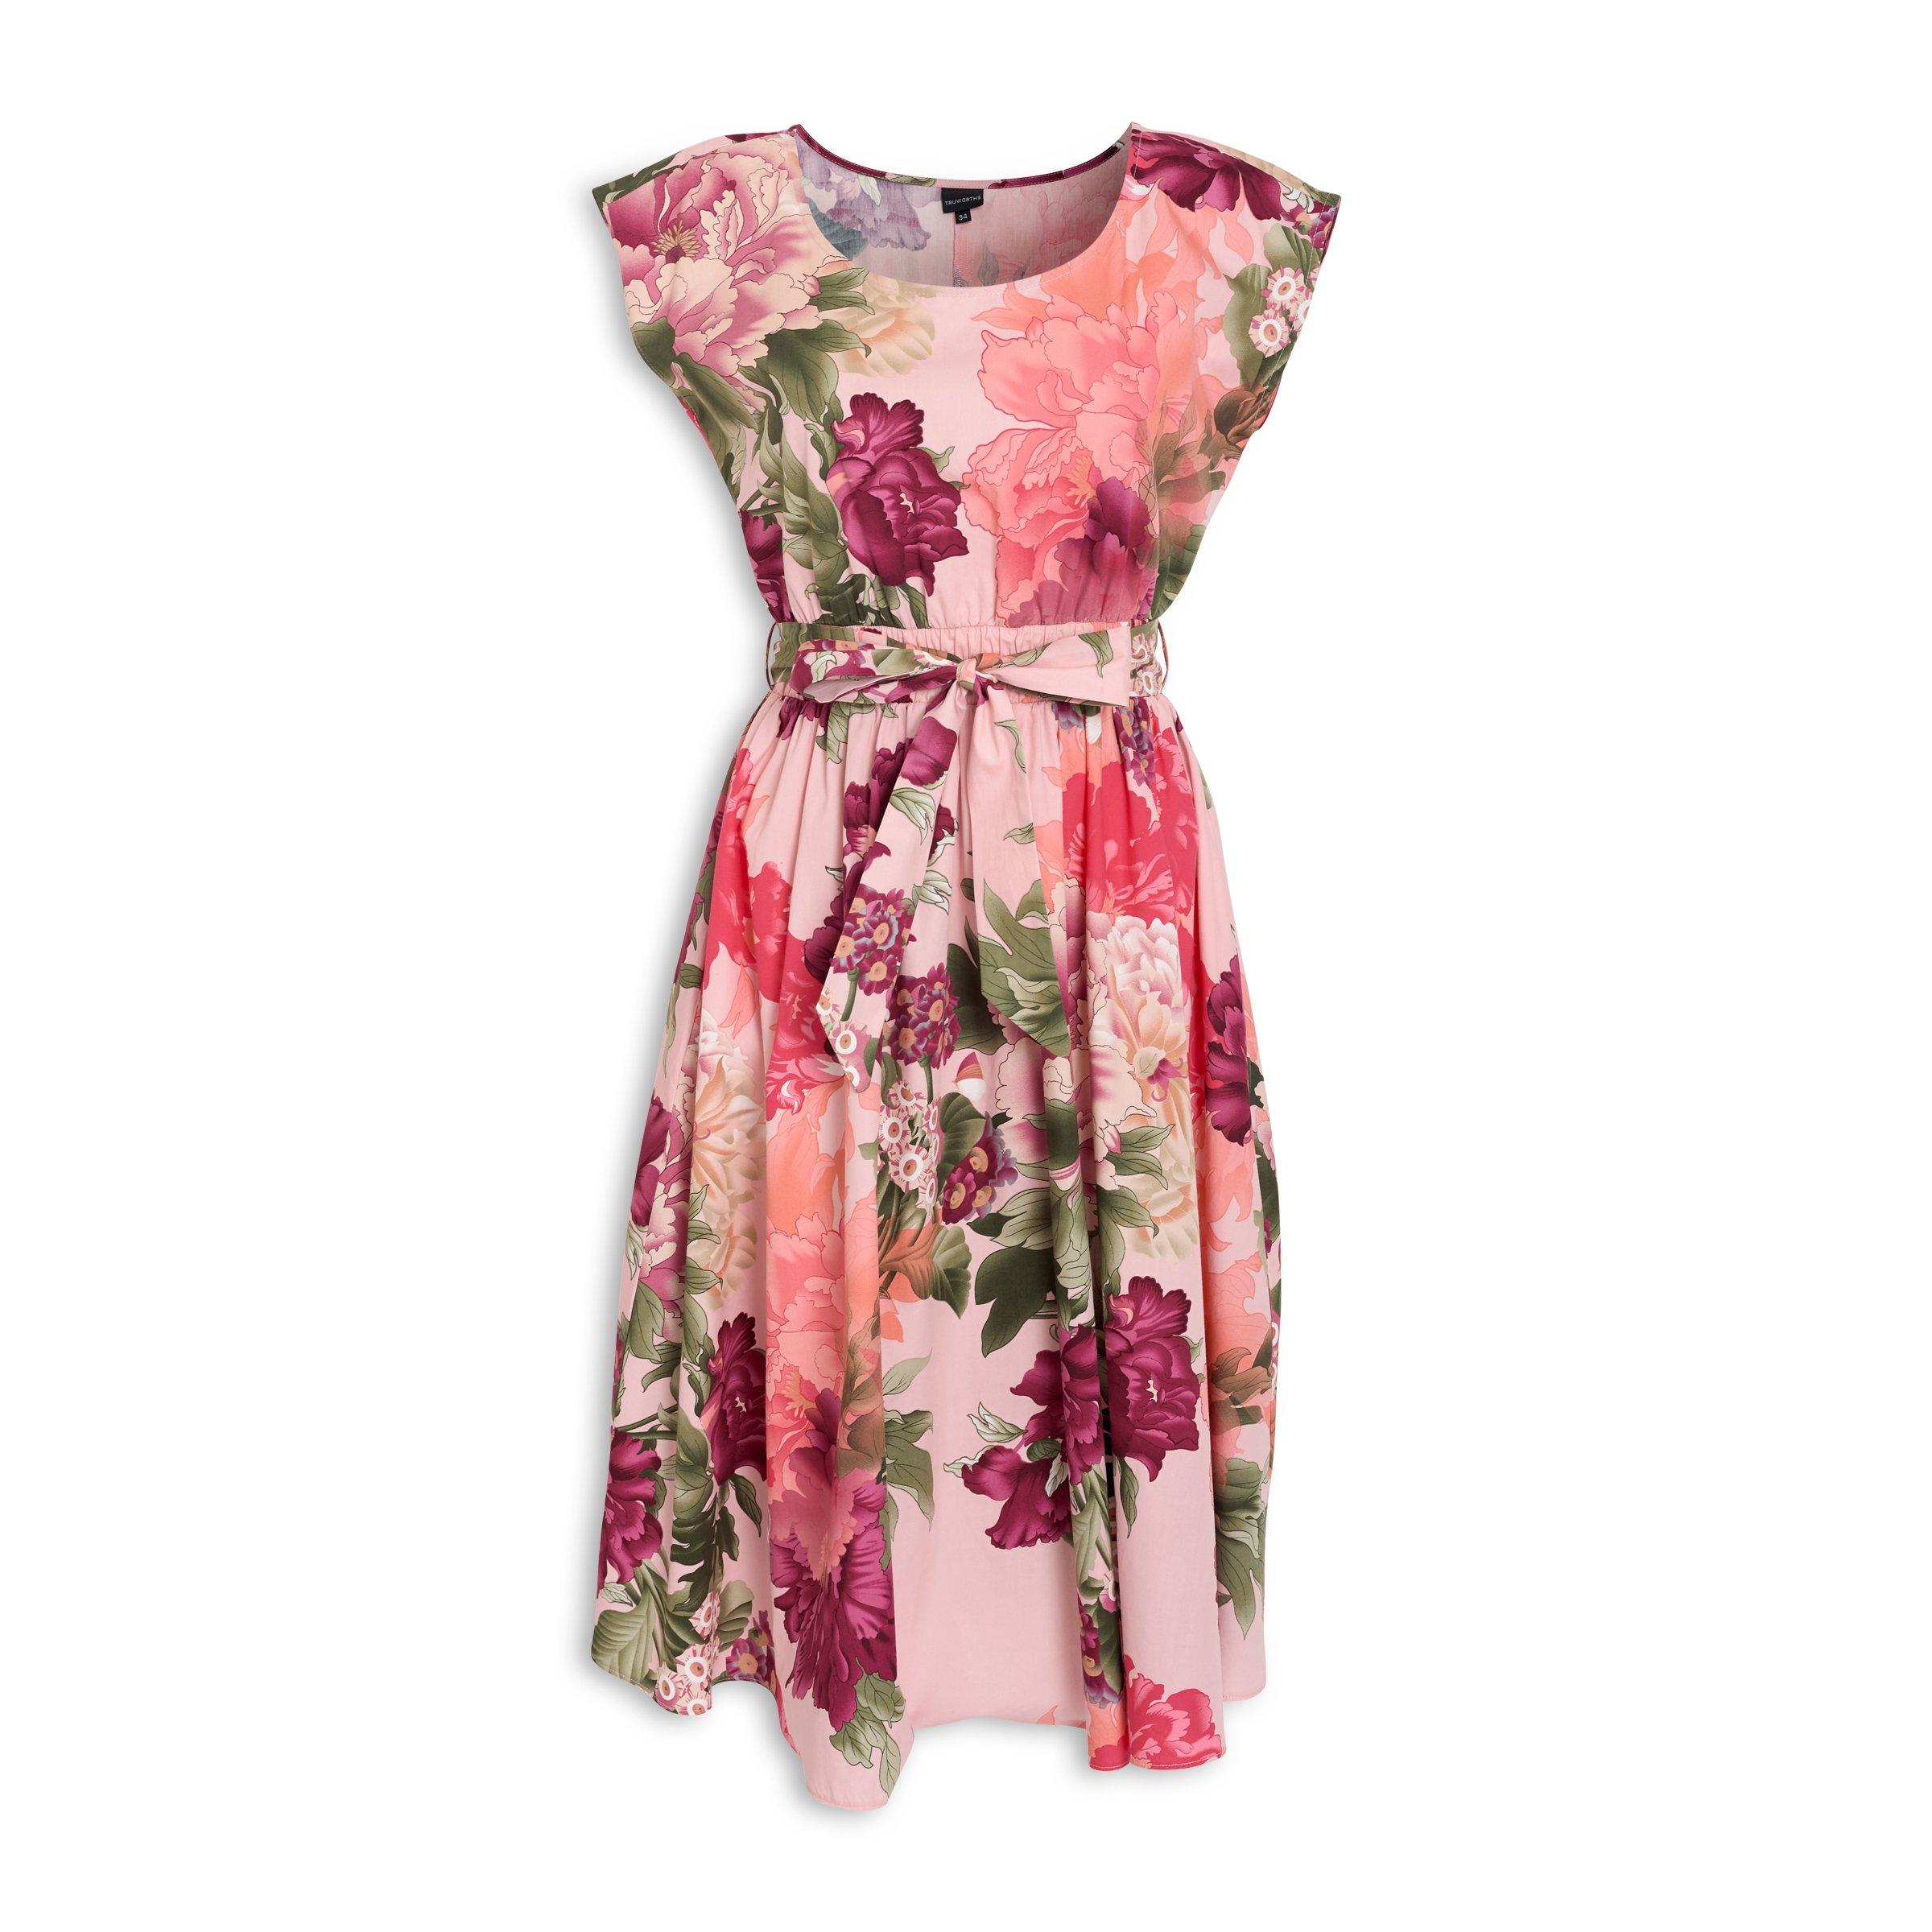 floral dresses truworths | Dresses Images 2022